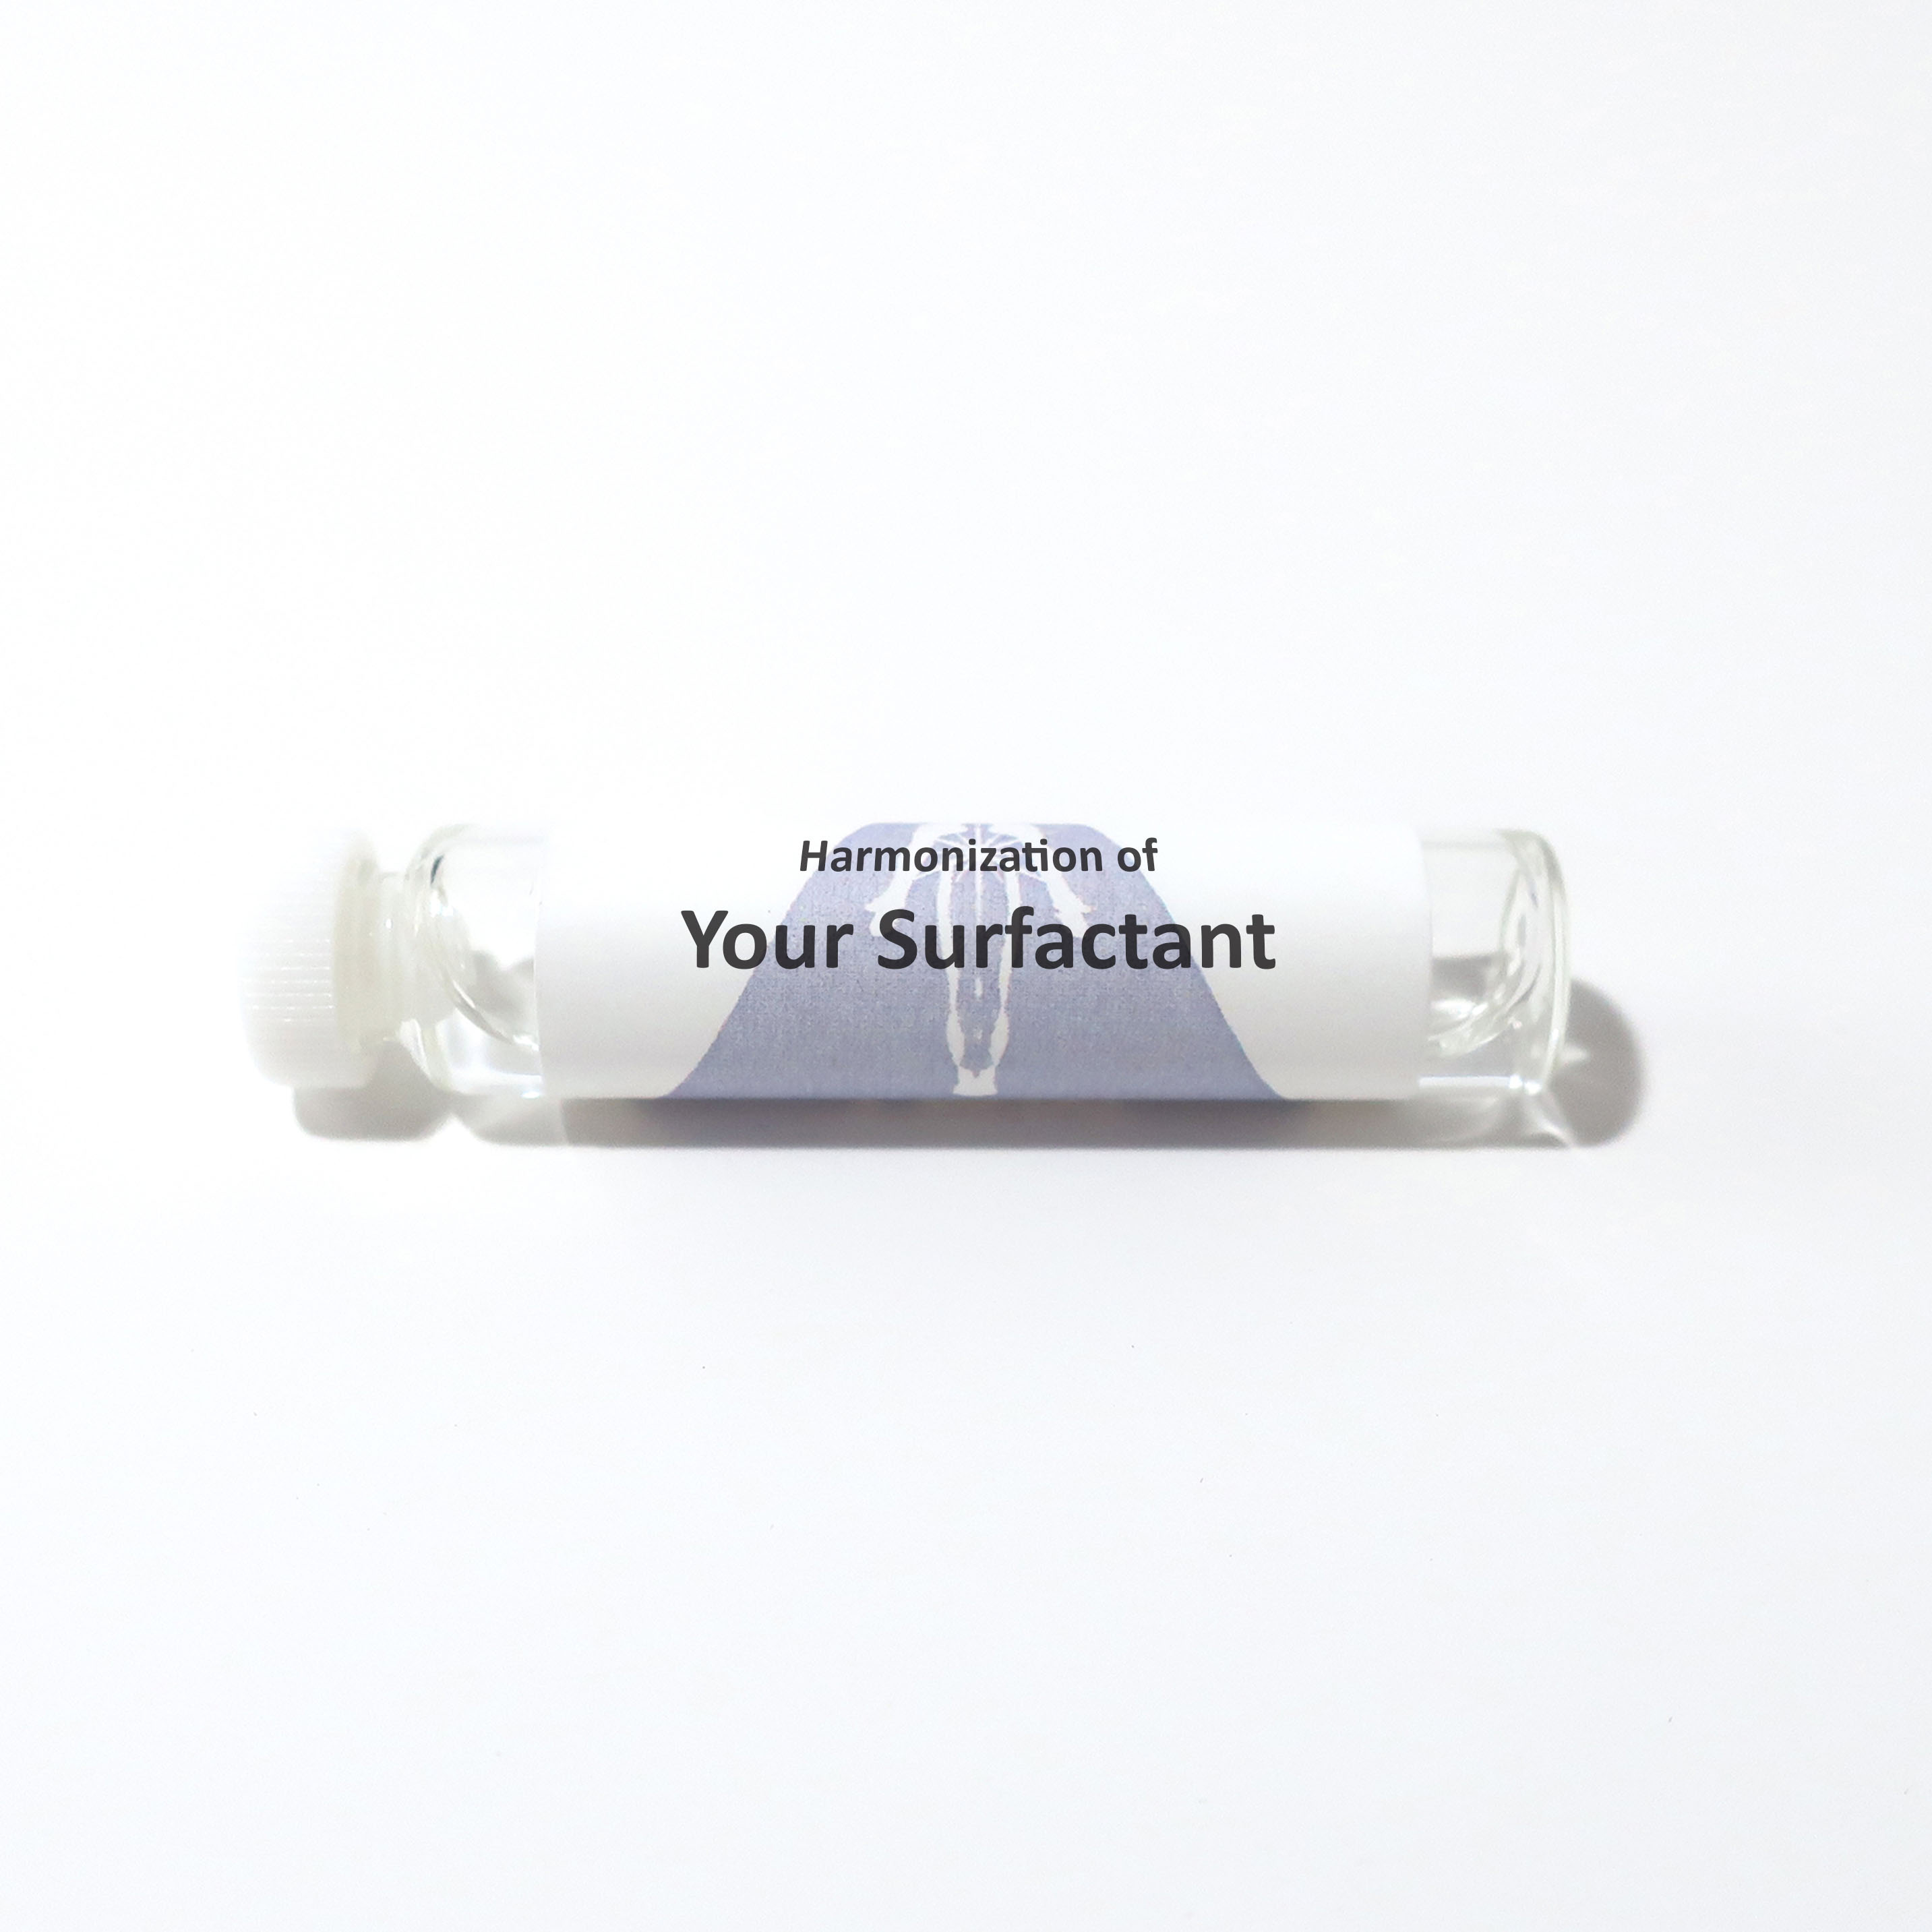 Your Surfactant